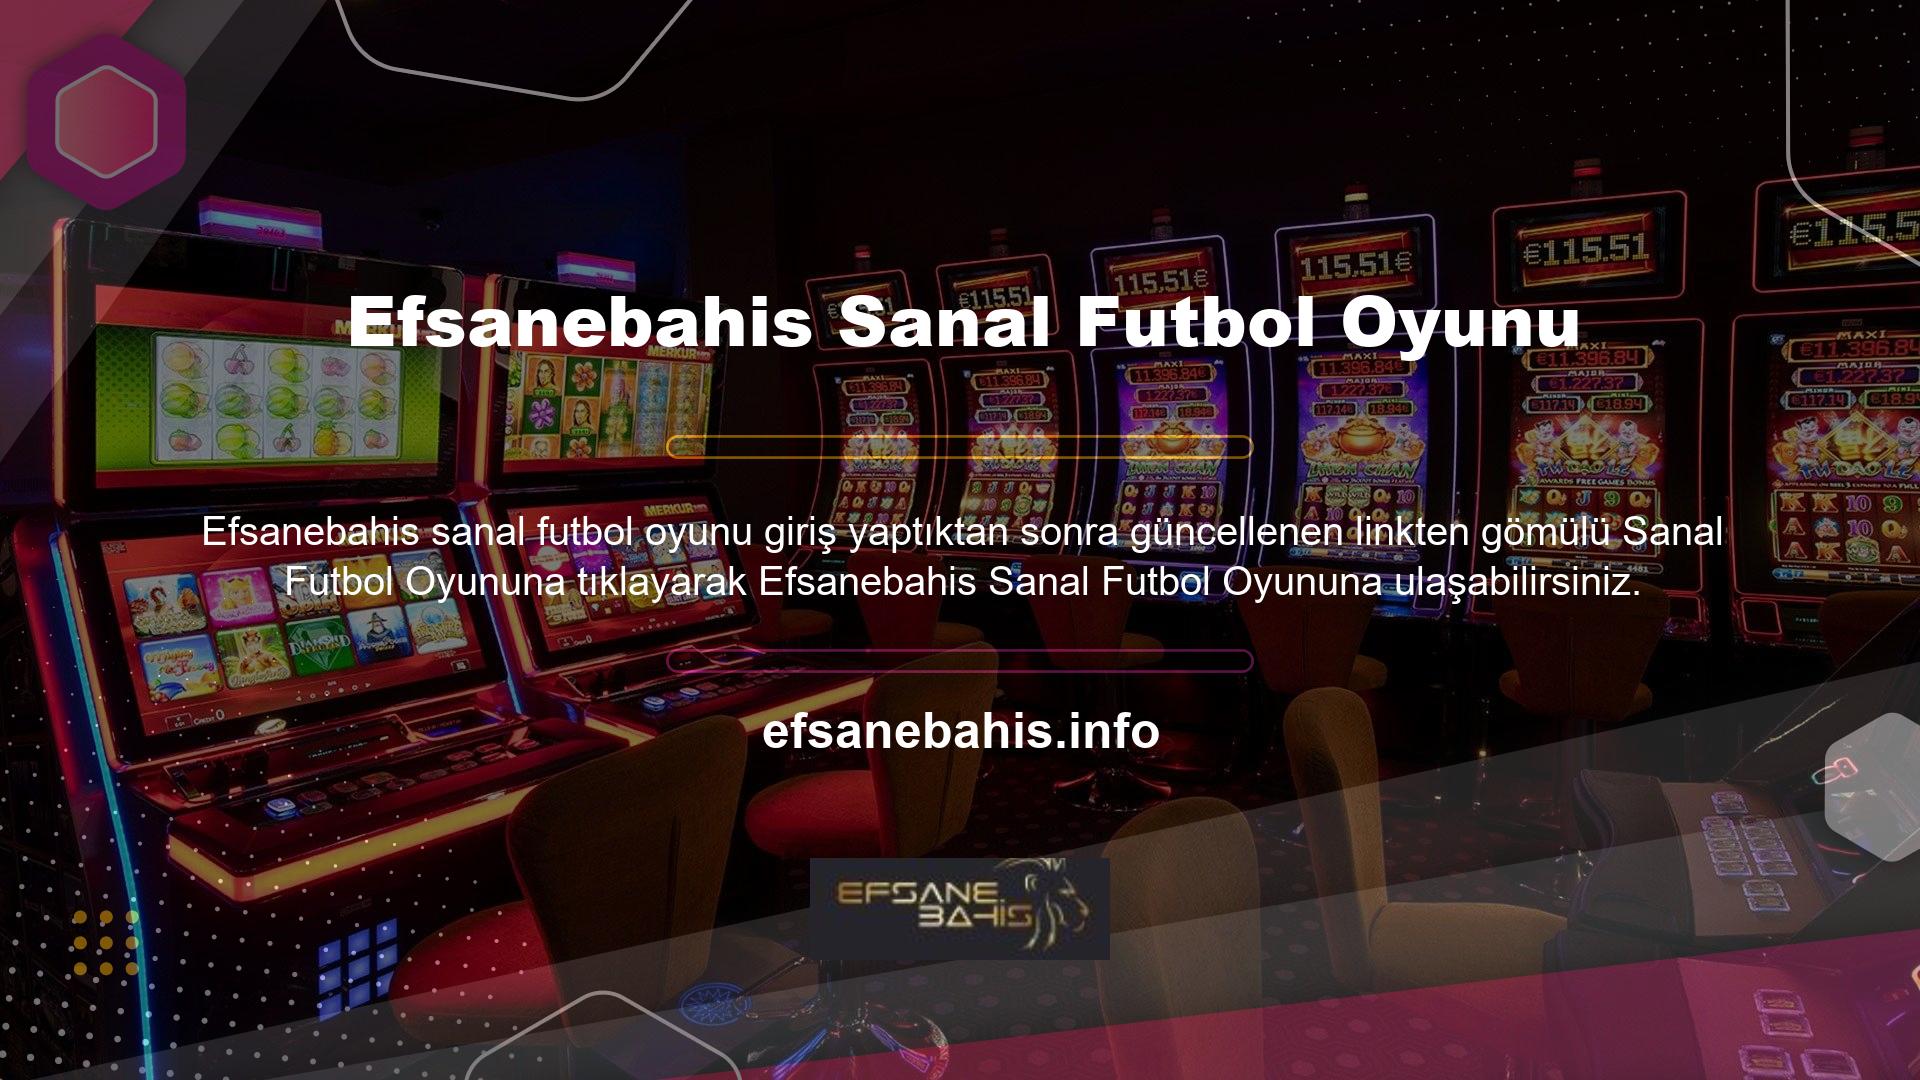 Sanal Futbol Ligi (vfl, Sanal Futbol Ligi anlamına gelir) gece gündüz sanal futbol bahisleri oynamanıza olanak tanır